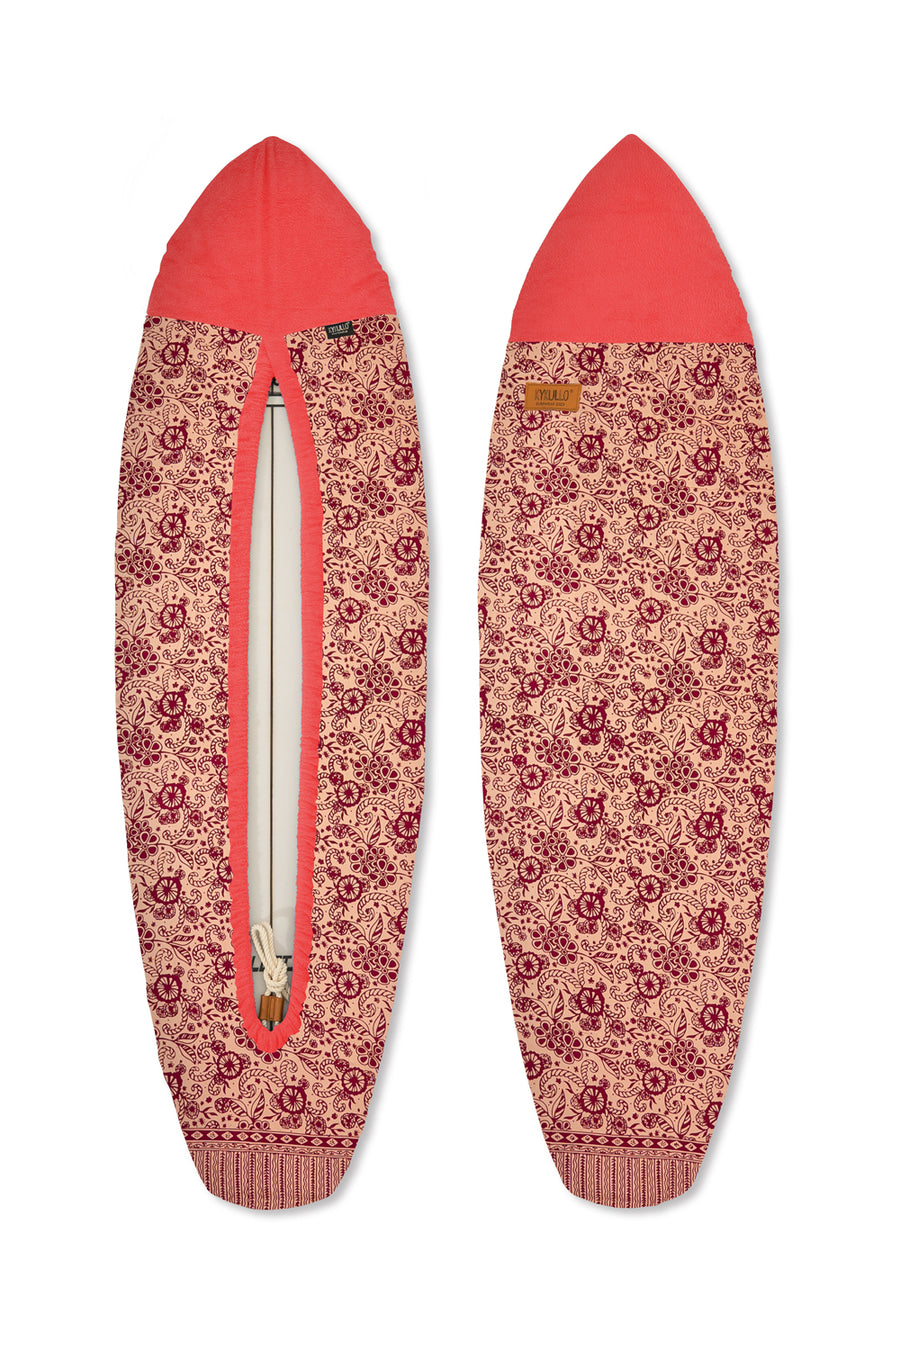 SURFWRAP 6'4 -PEACH (RETAIL)